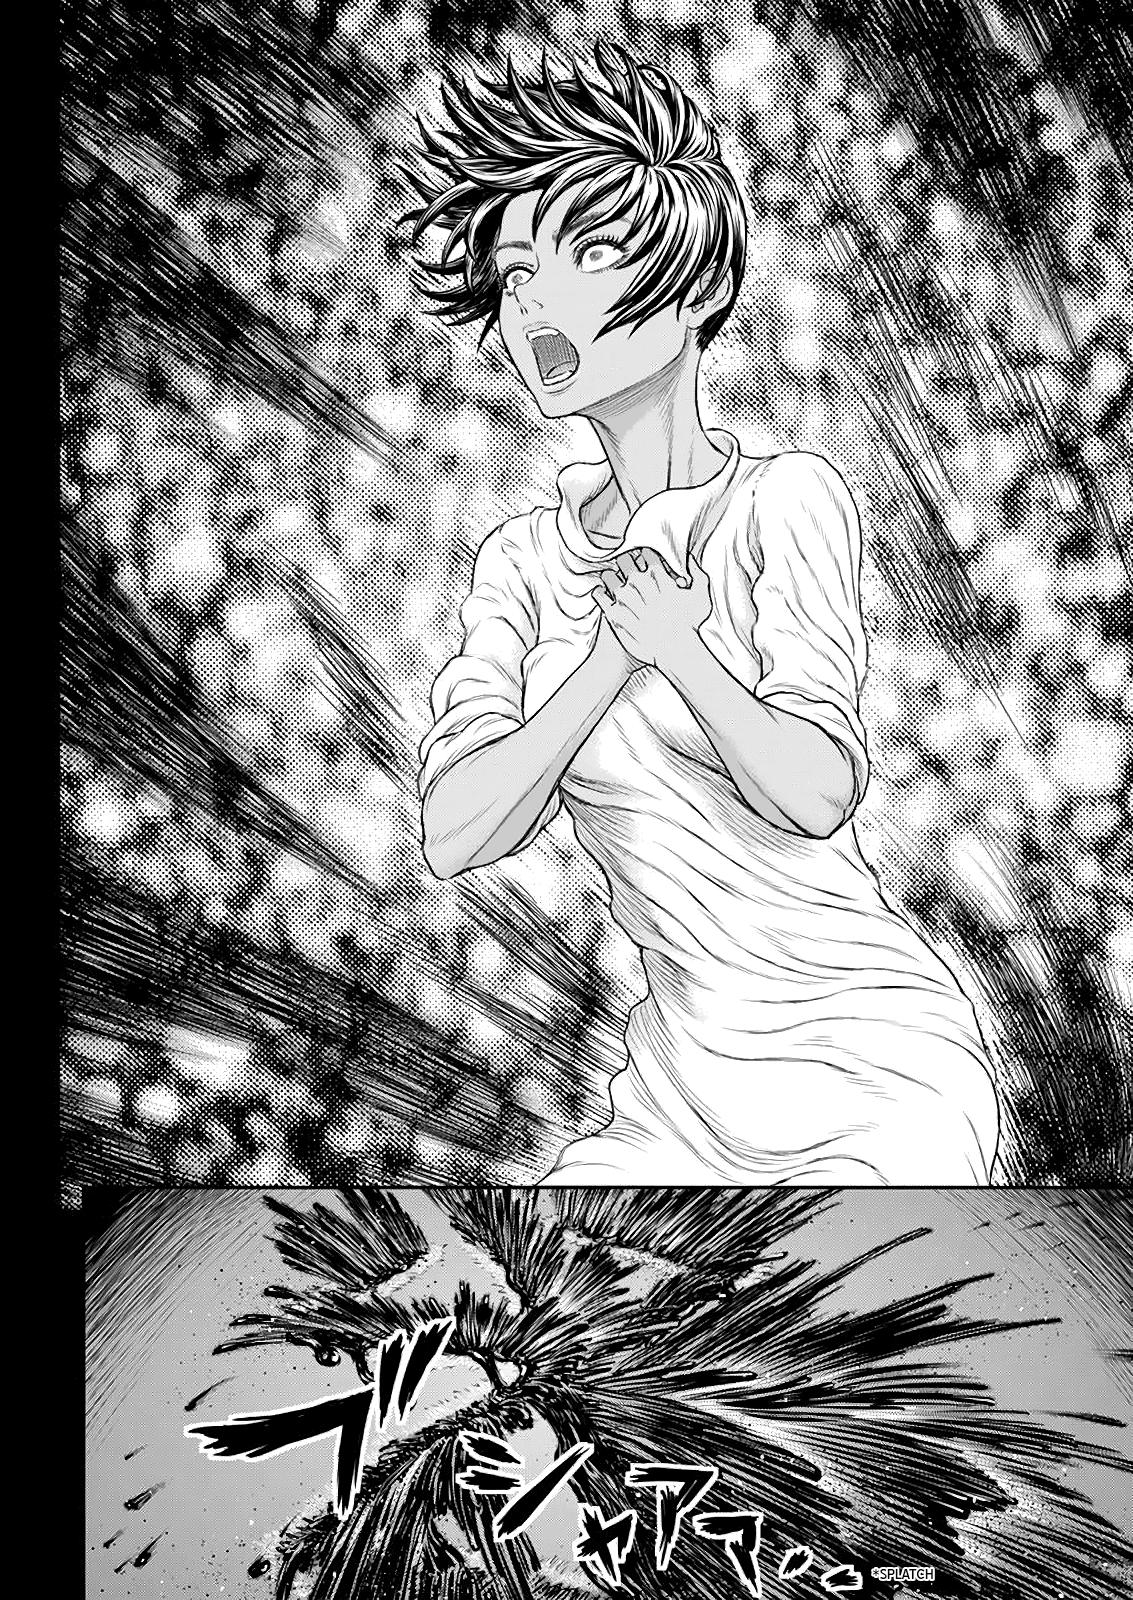 Berserk Manga Chapter 365 image 10